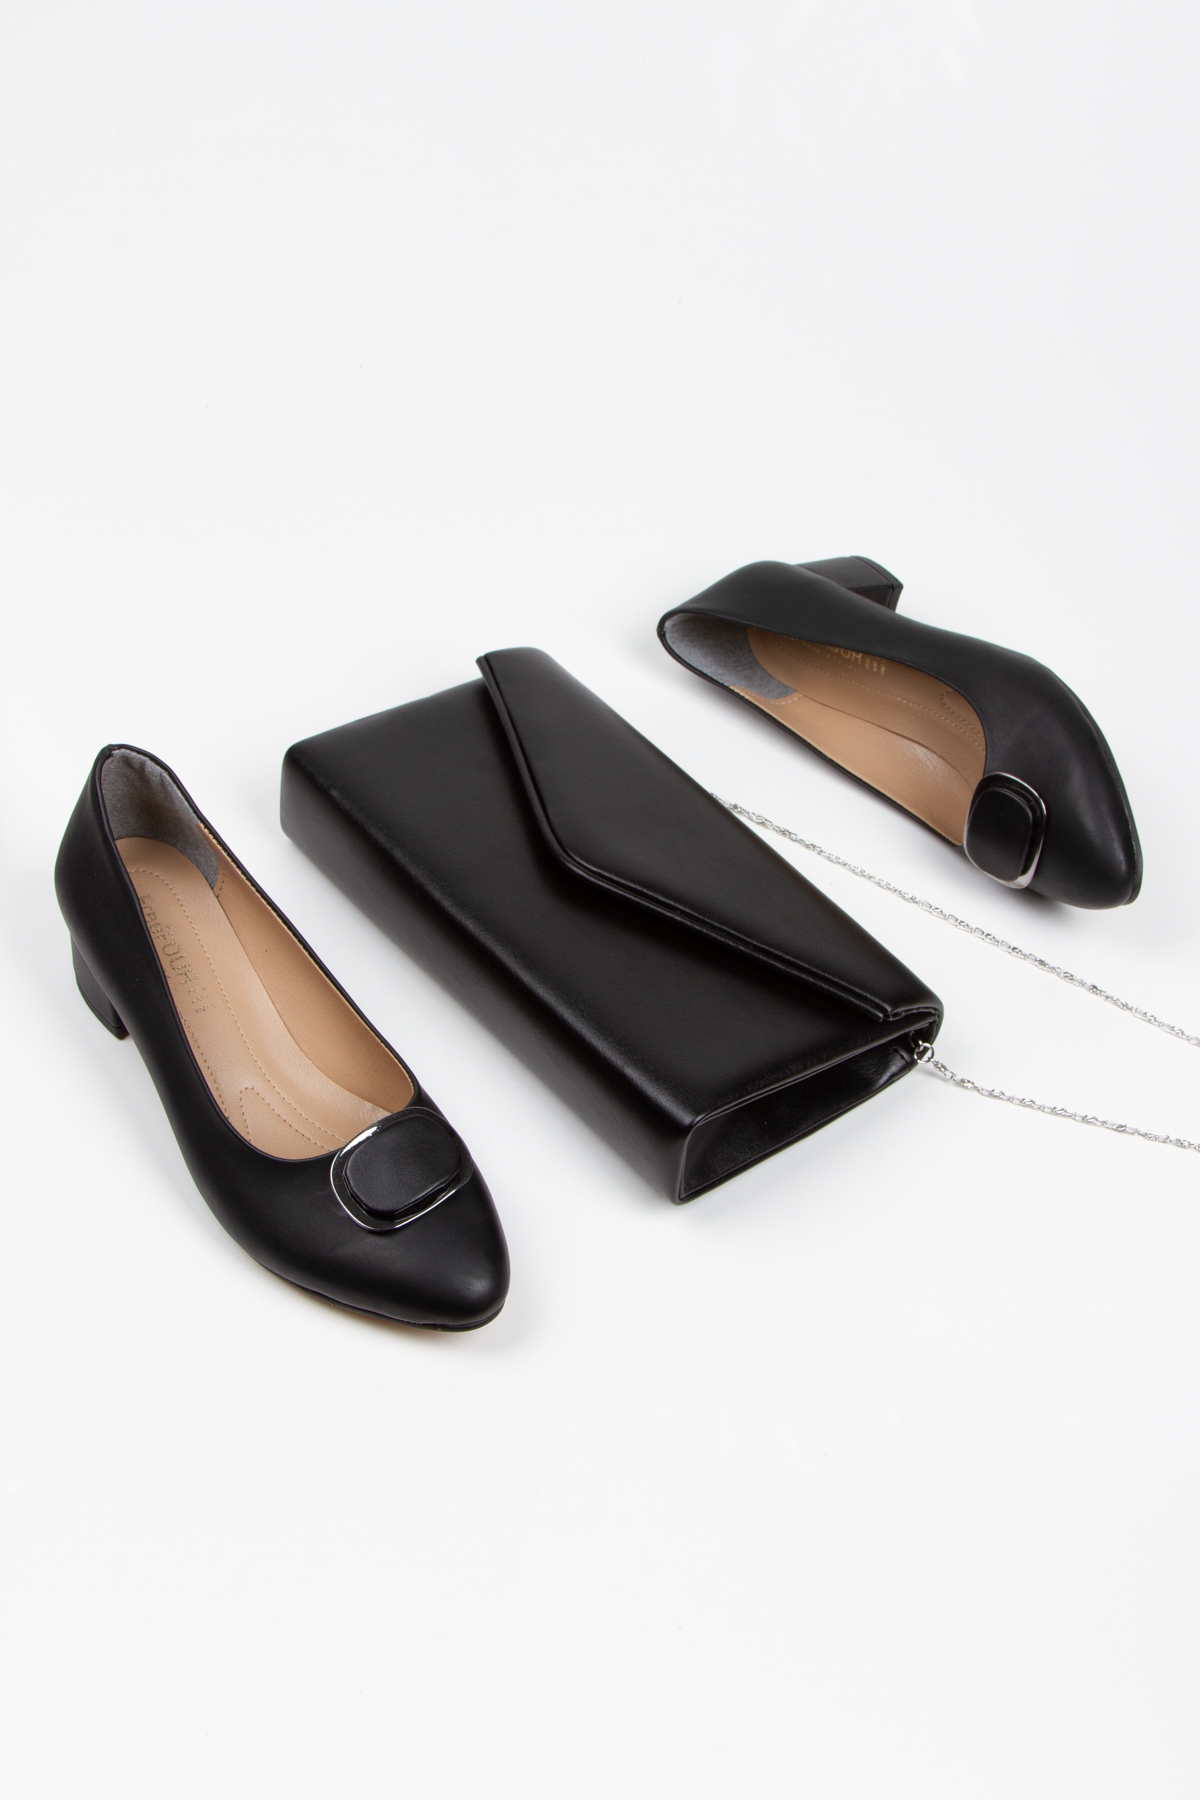 Kadın Kısa Topuklu Şık Tokalı Günlük Ayakkabı ve Çanta Takımı Siyah